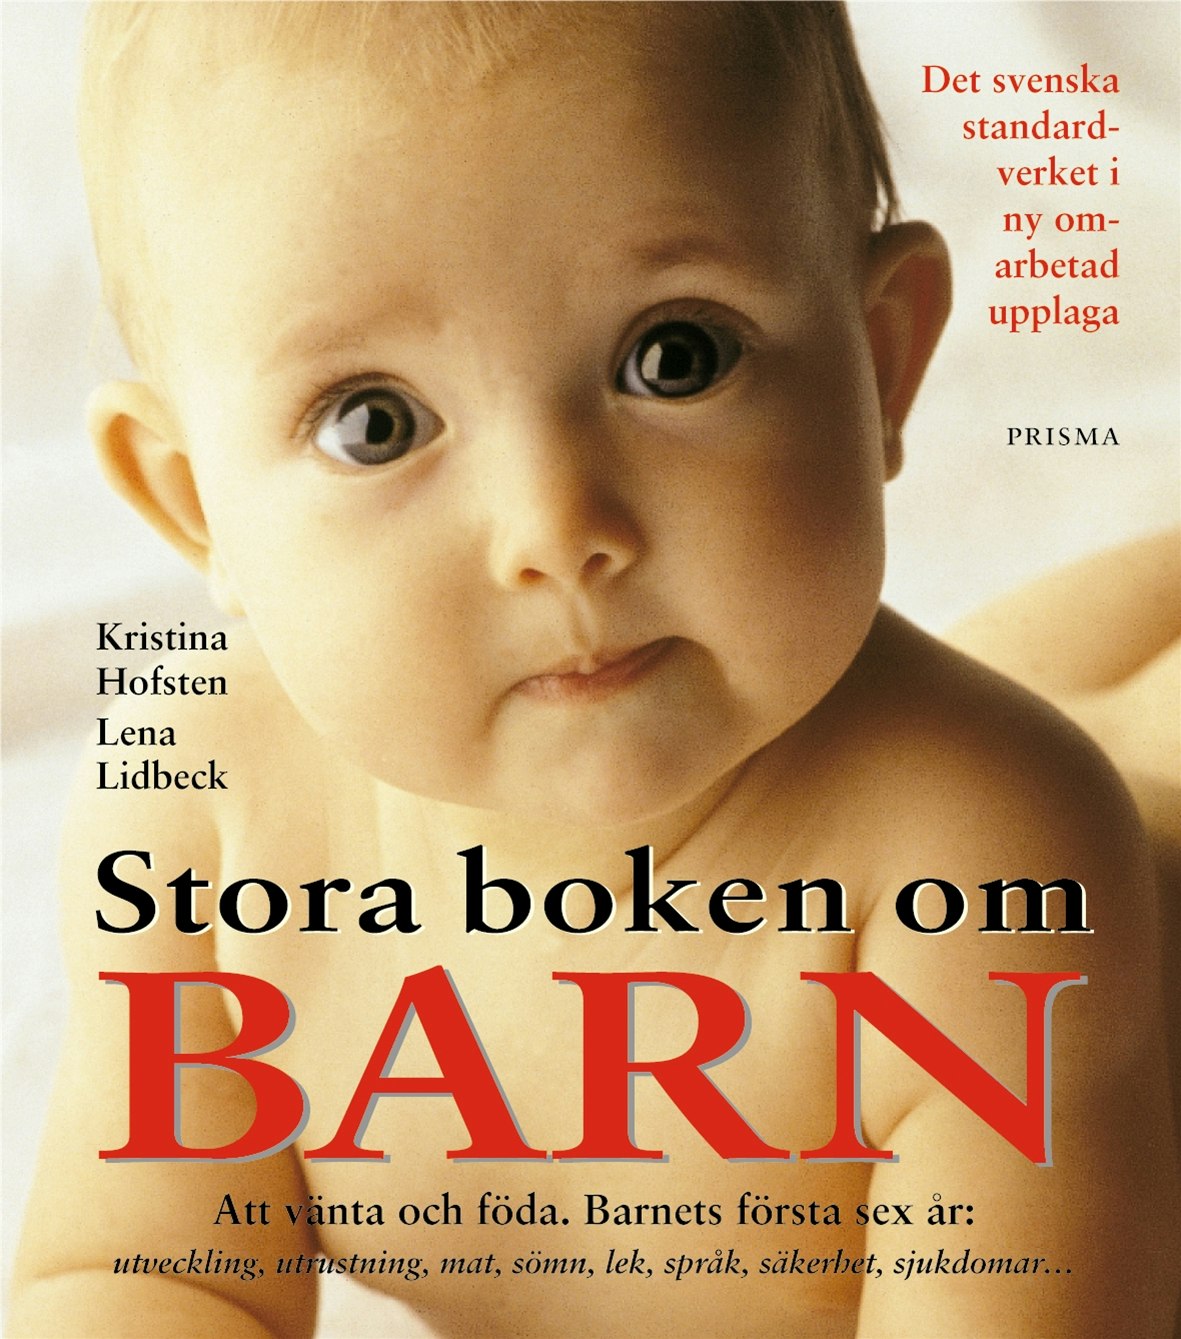 Stora boken om barn : att vänta och föda : barnets första sex år